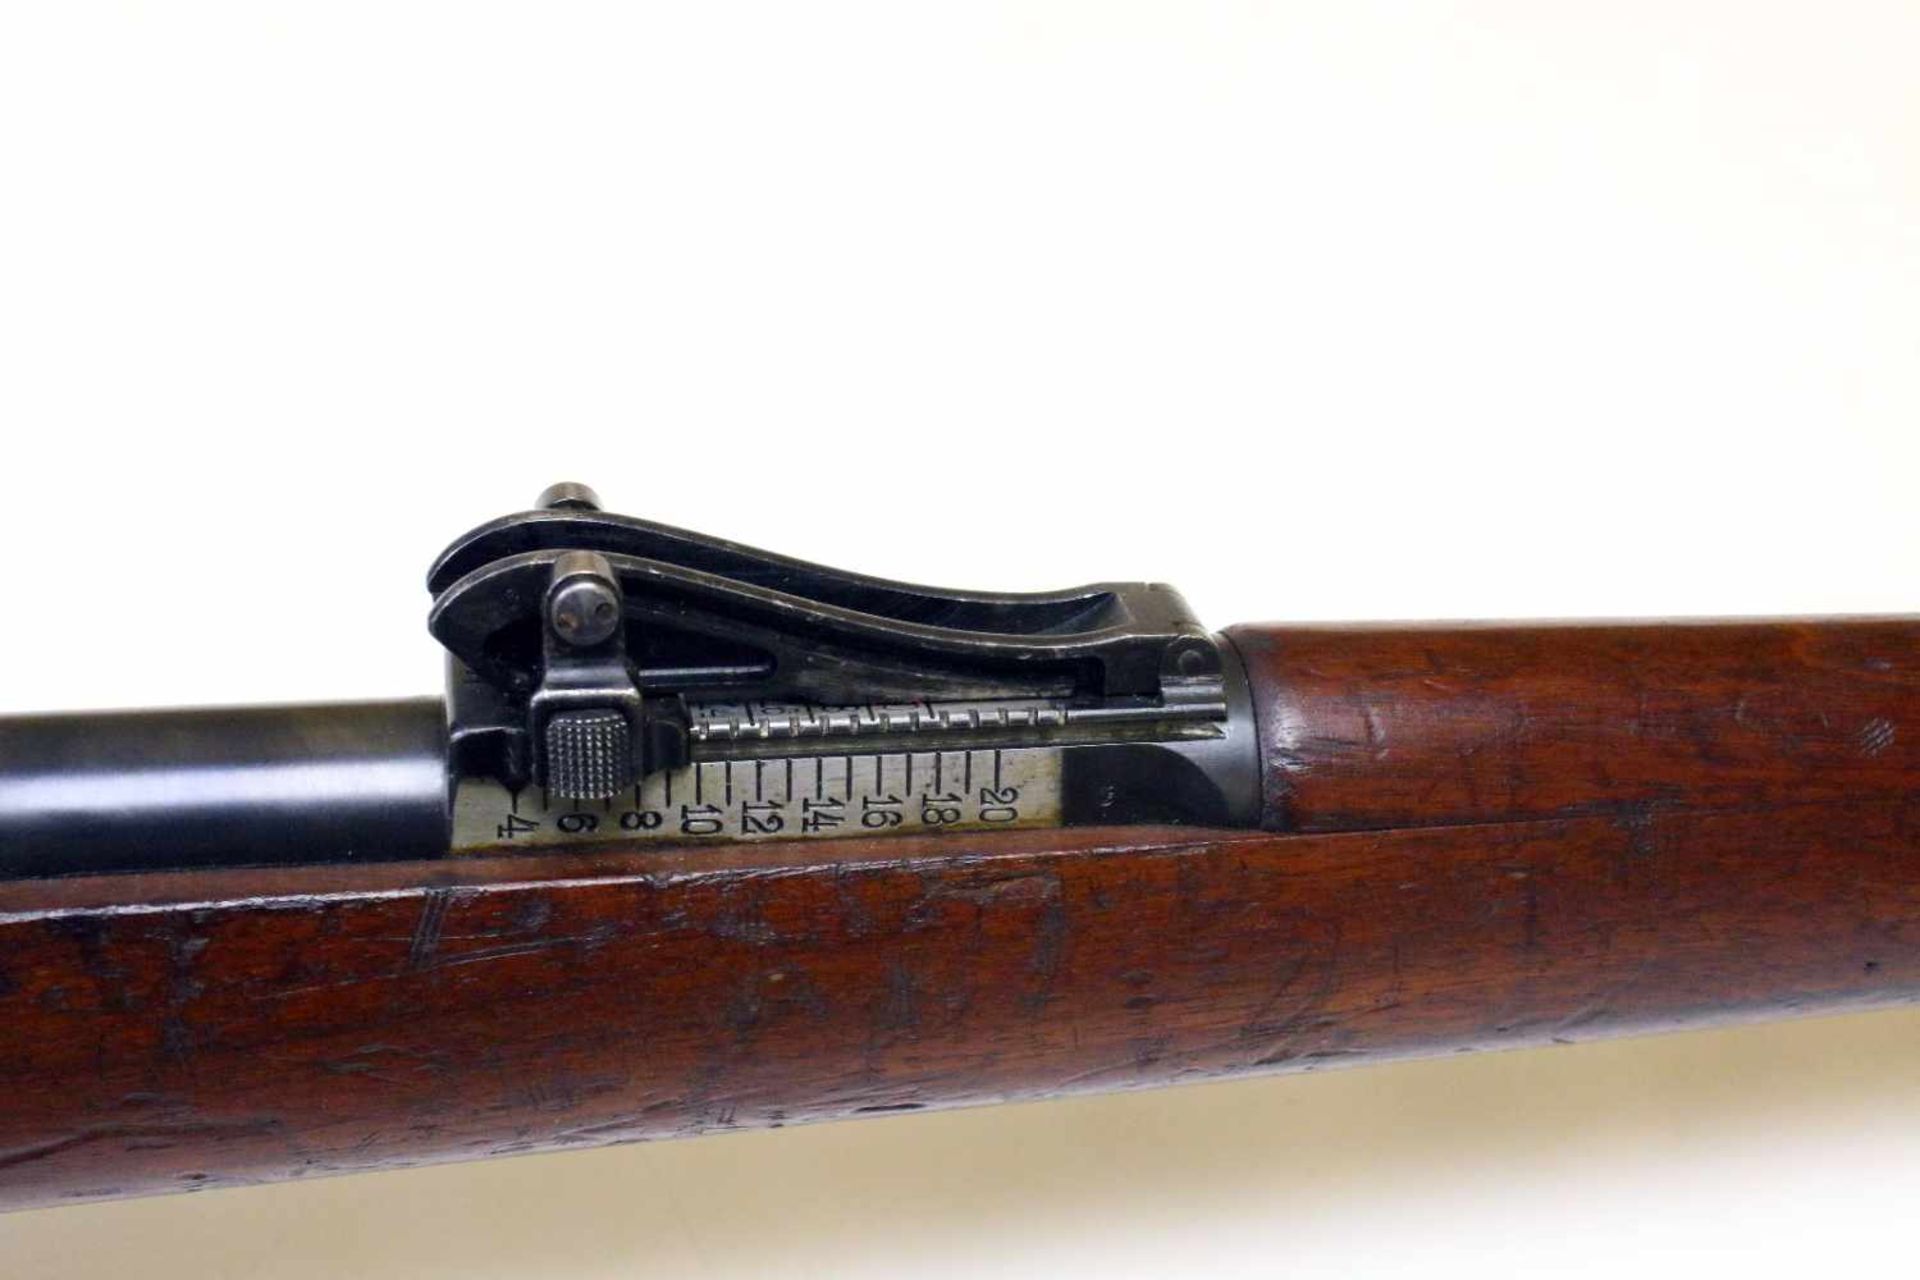 Mausergewehr M1909 Peru Cal. 7,65 x 53mm, Lauf rauh, narbig. Auf der Hülse das peruanische Wappen - Bild 5 aus 16